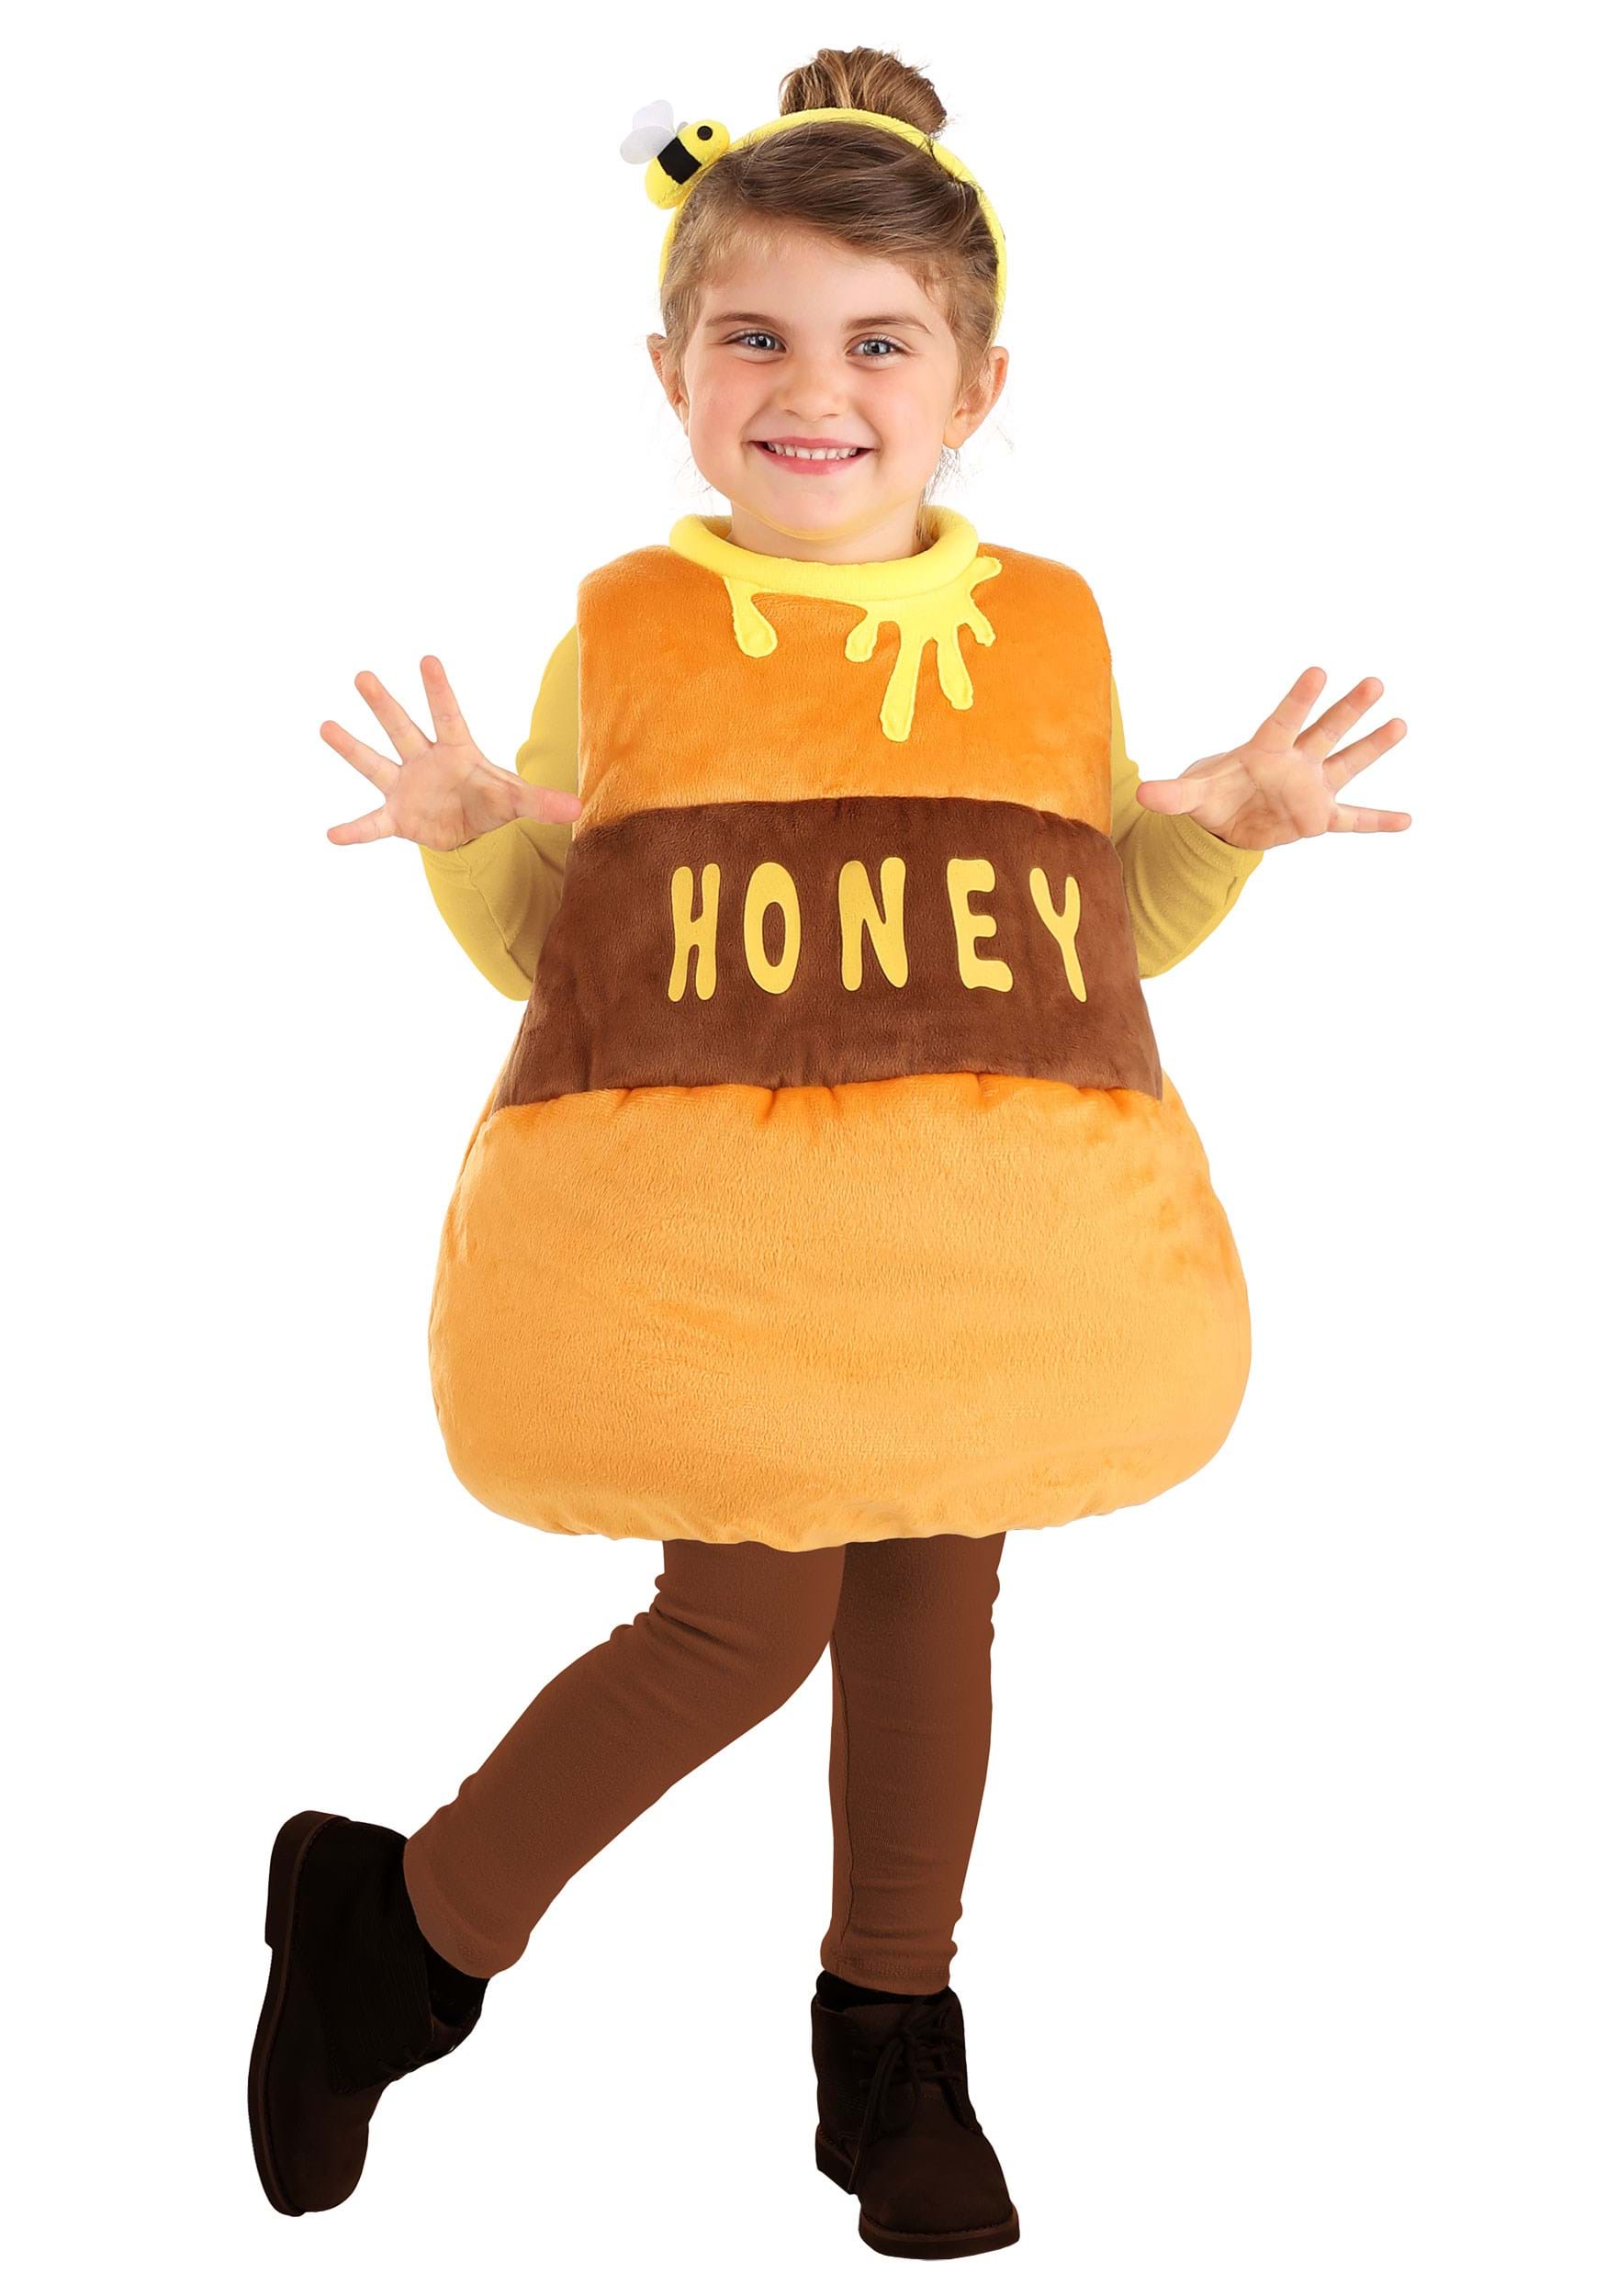 Honey costume